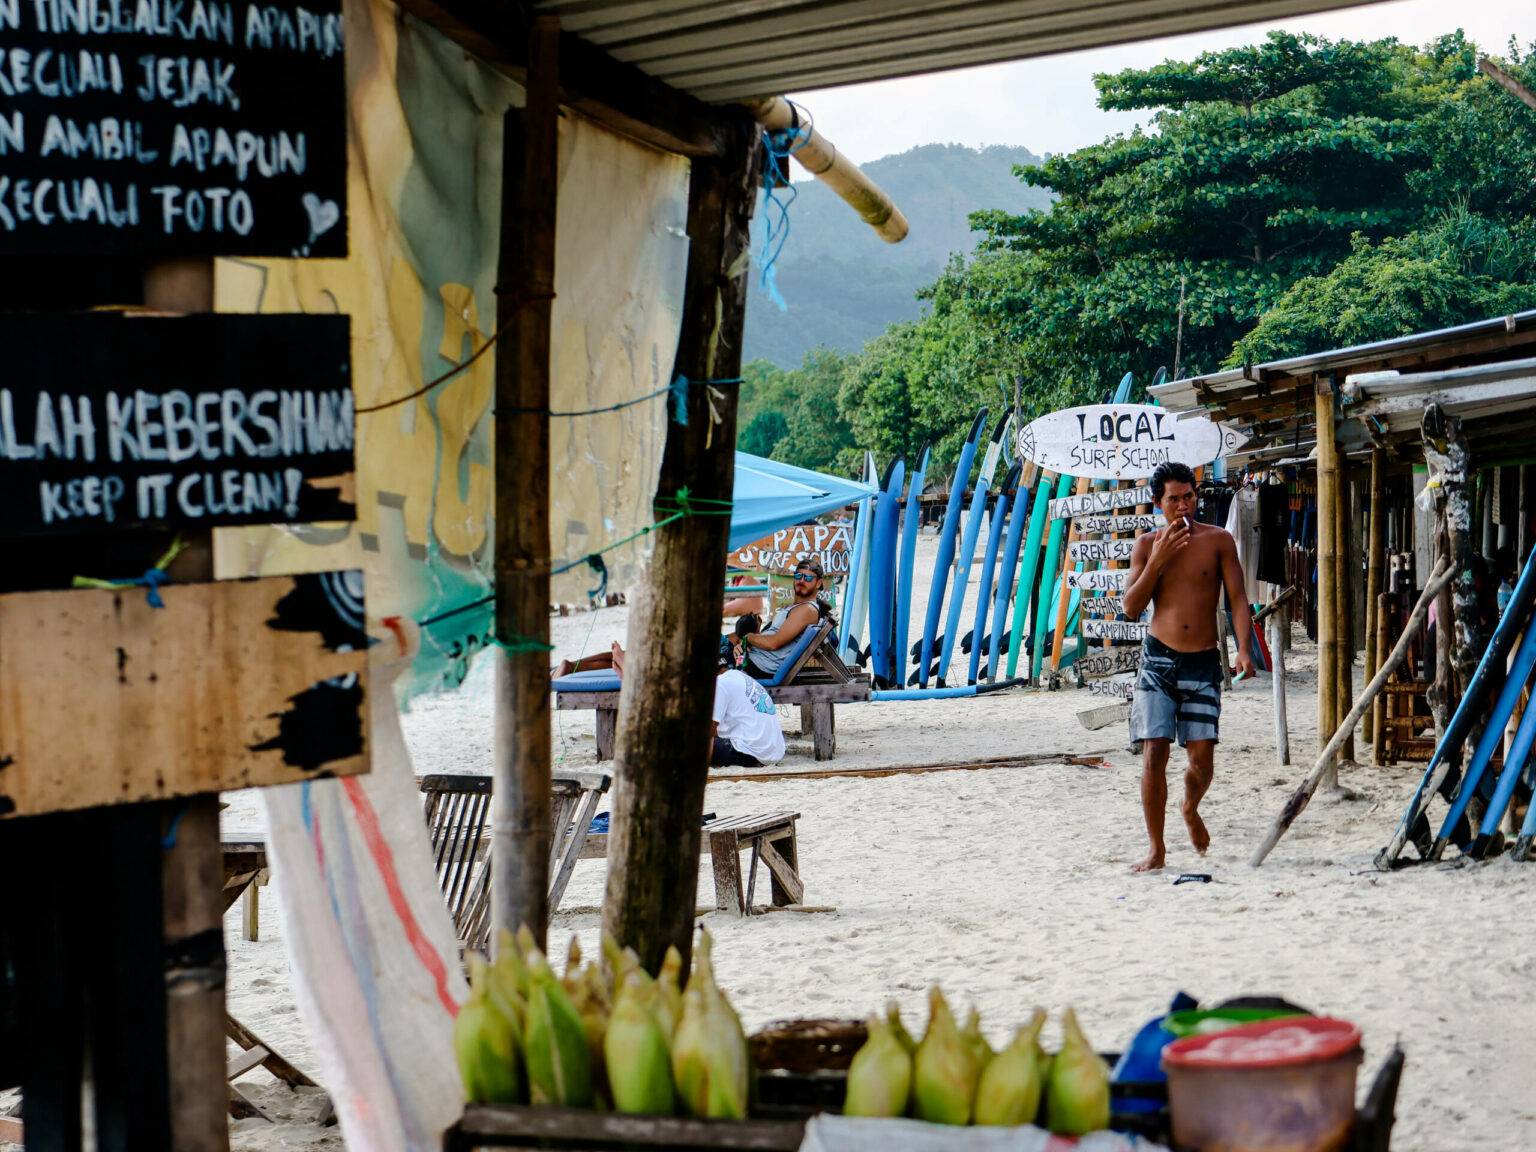 Am Selong Strand auf Lombok findest du überall Surfschulen, Warungs und Liegen.